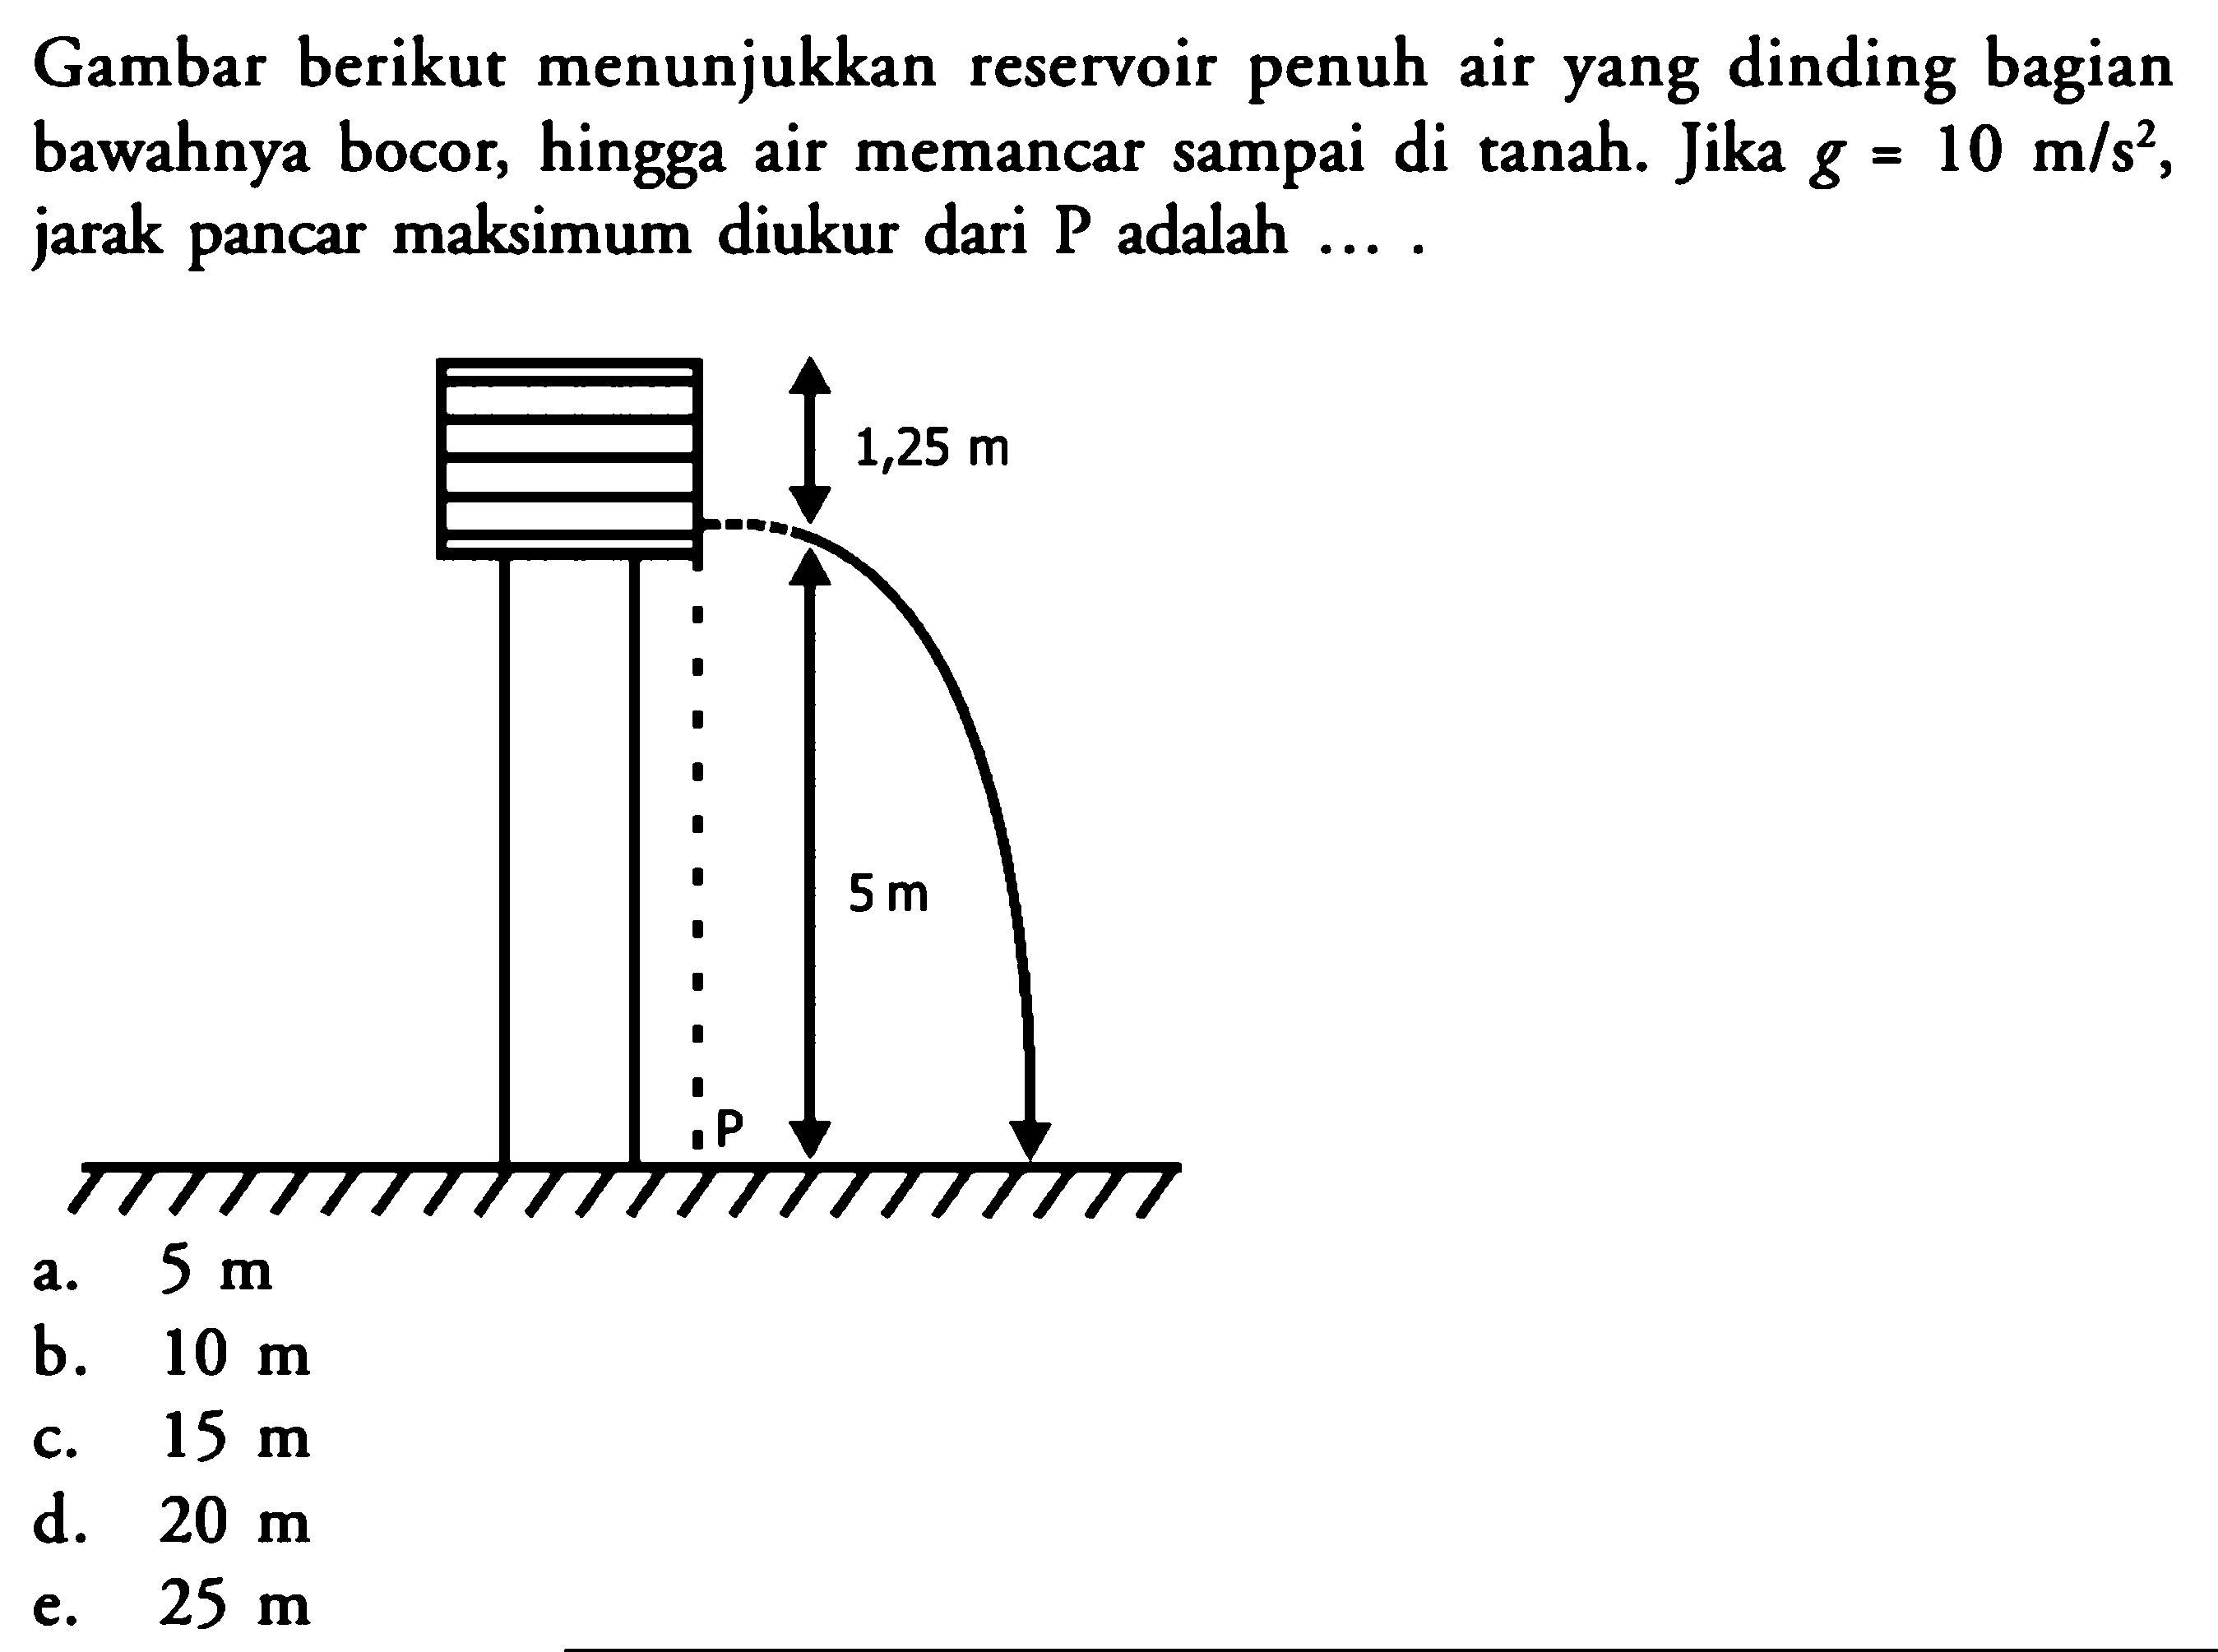 Gambar berikut menunjukkan reservoir penuh air yang dinding bagian bawahnya bocor, hingga air memancar sampai di tanah. Jika  g=10 m / s^(2) , jarak pancar maksimum diukur dari  P  adalah ....